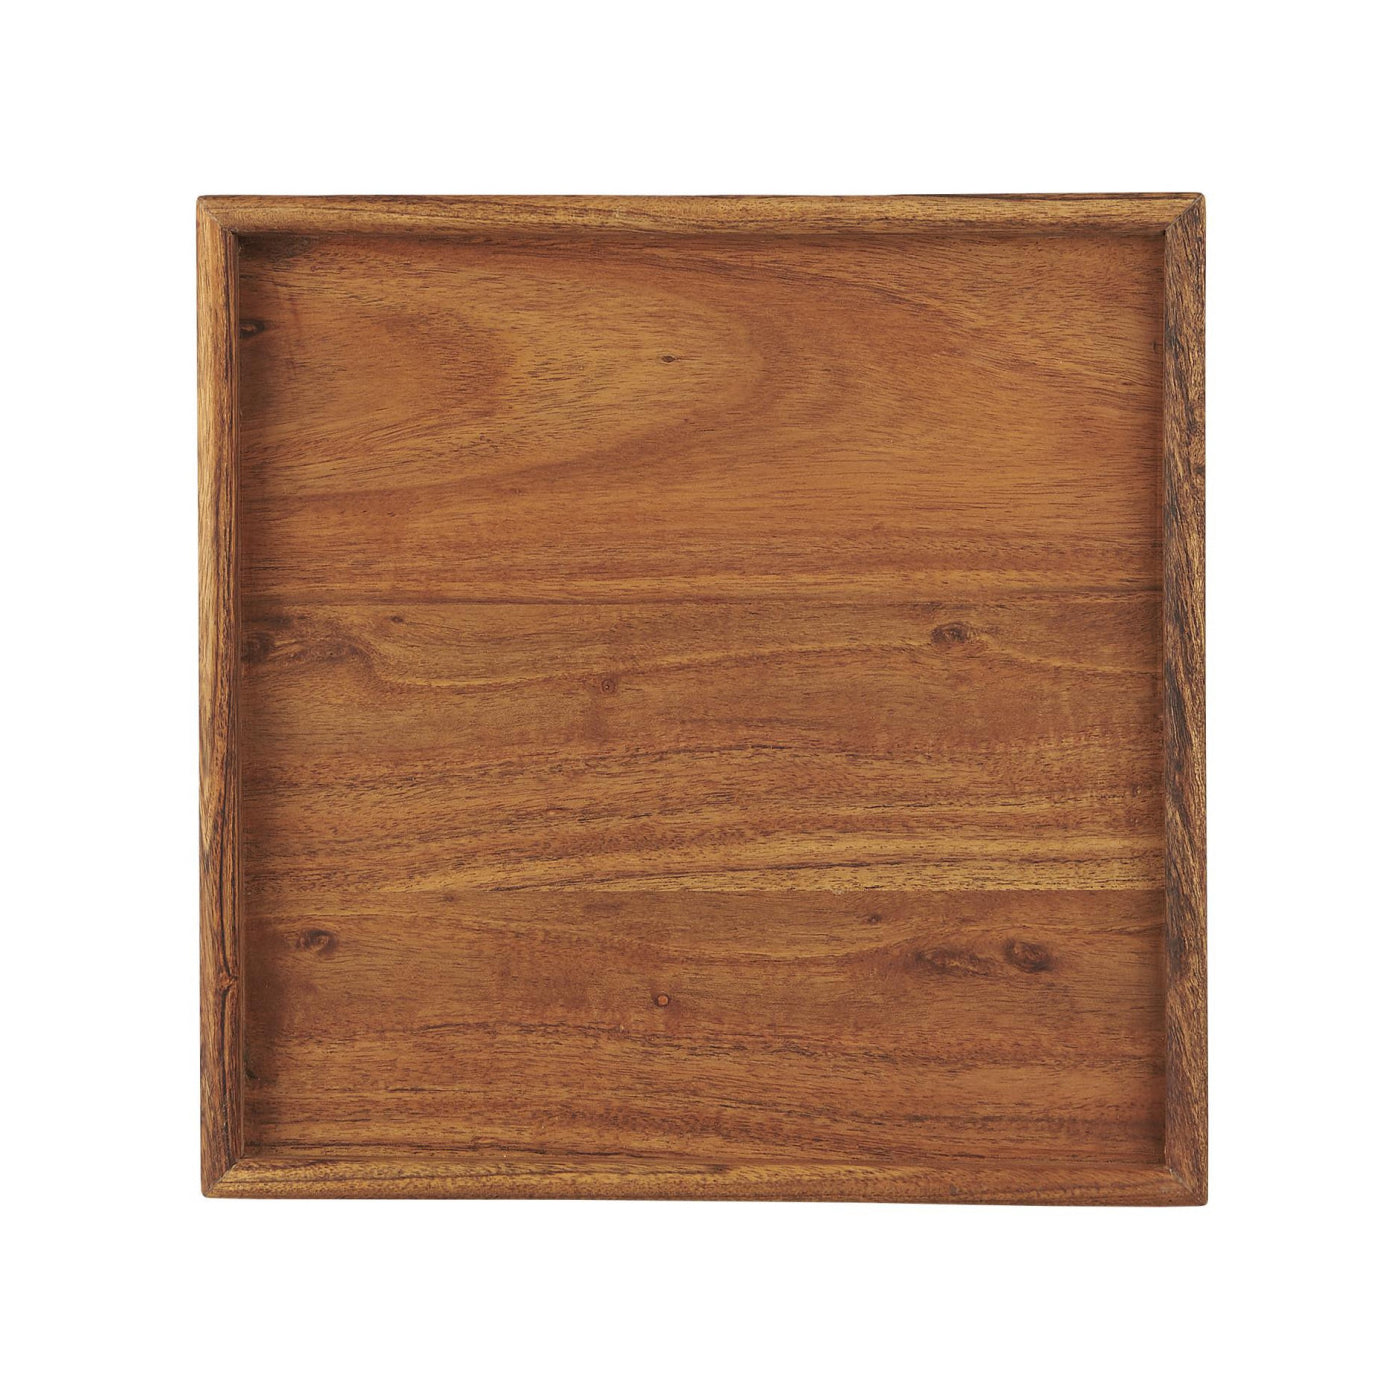 Bandeja de madera de Acacia 30x30 cm